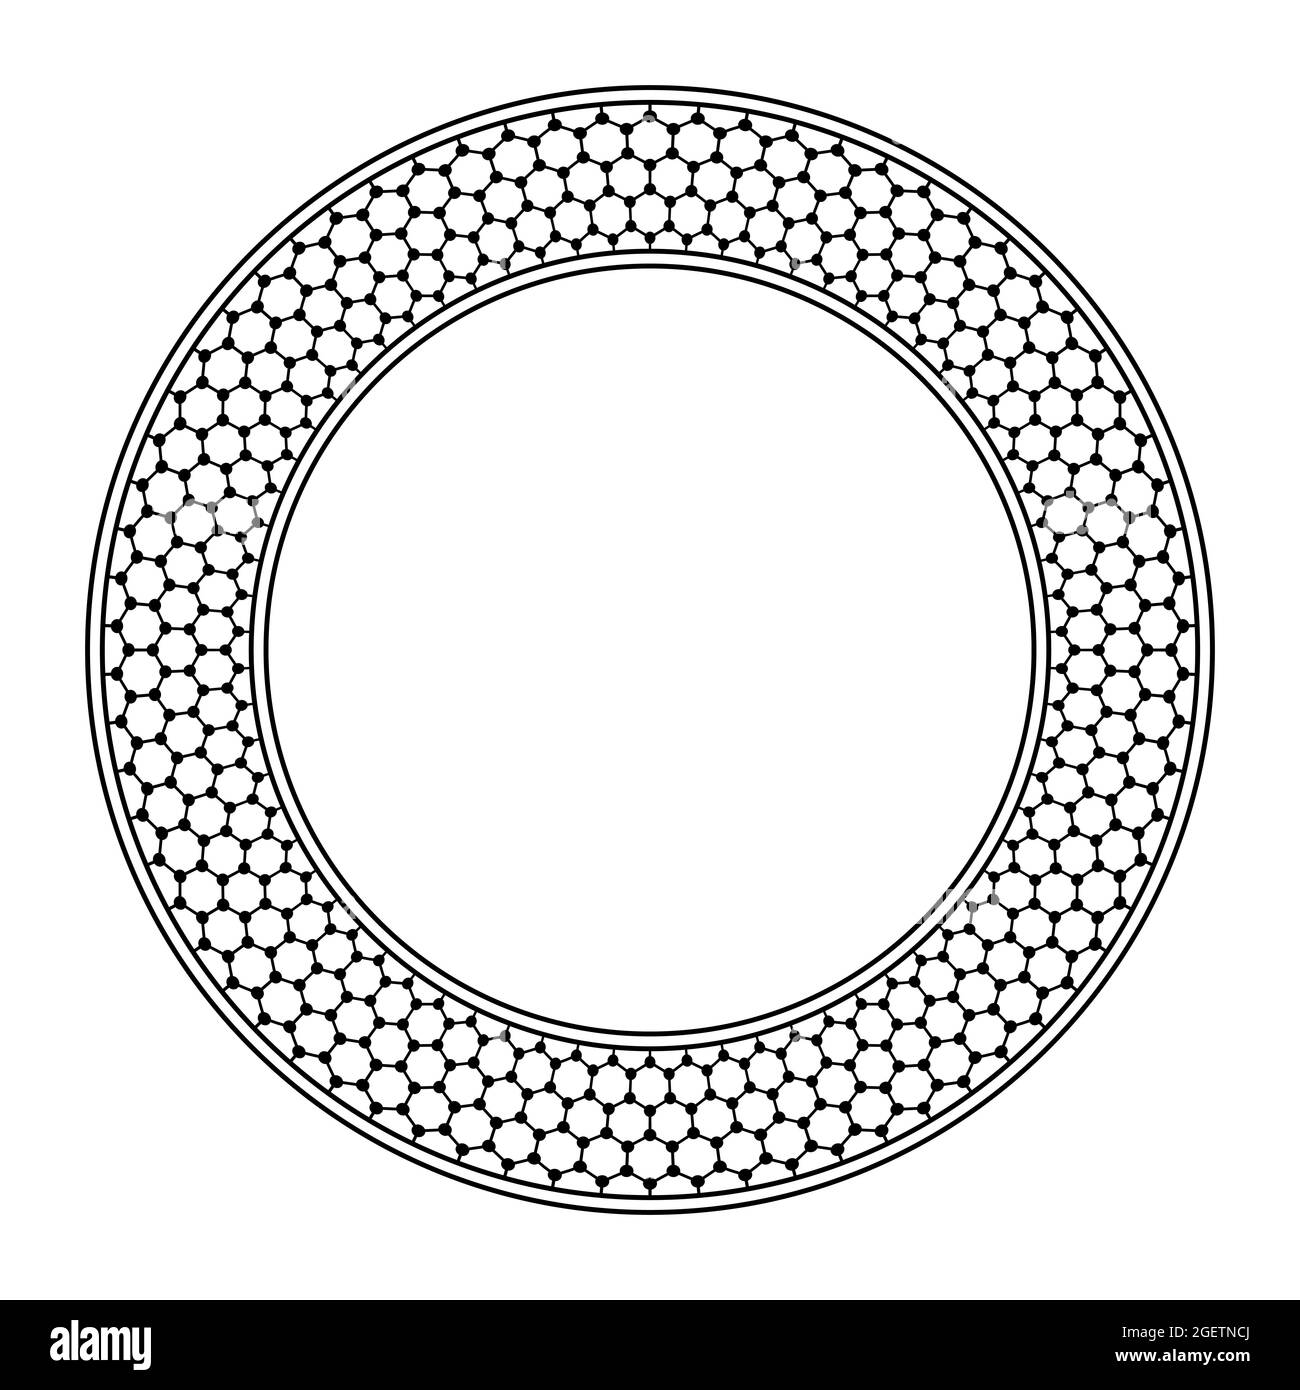 Cadre circulaire avec motif graphique. Bordure, encadrée de cercles, avec structure graphique moléculaire schématique sans couture, atomes de carbone dans une grille hexagonale. Banque D'Images